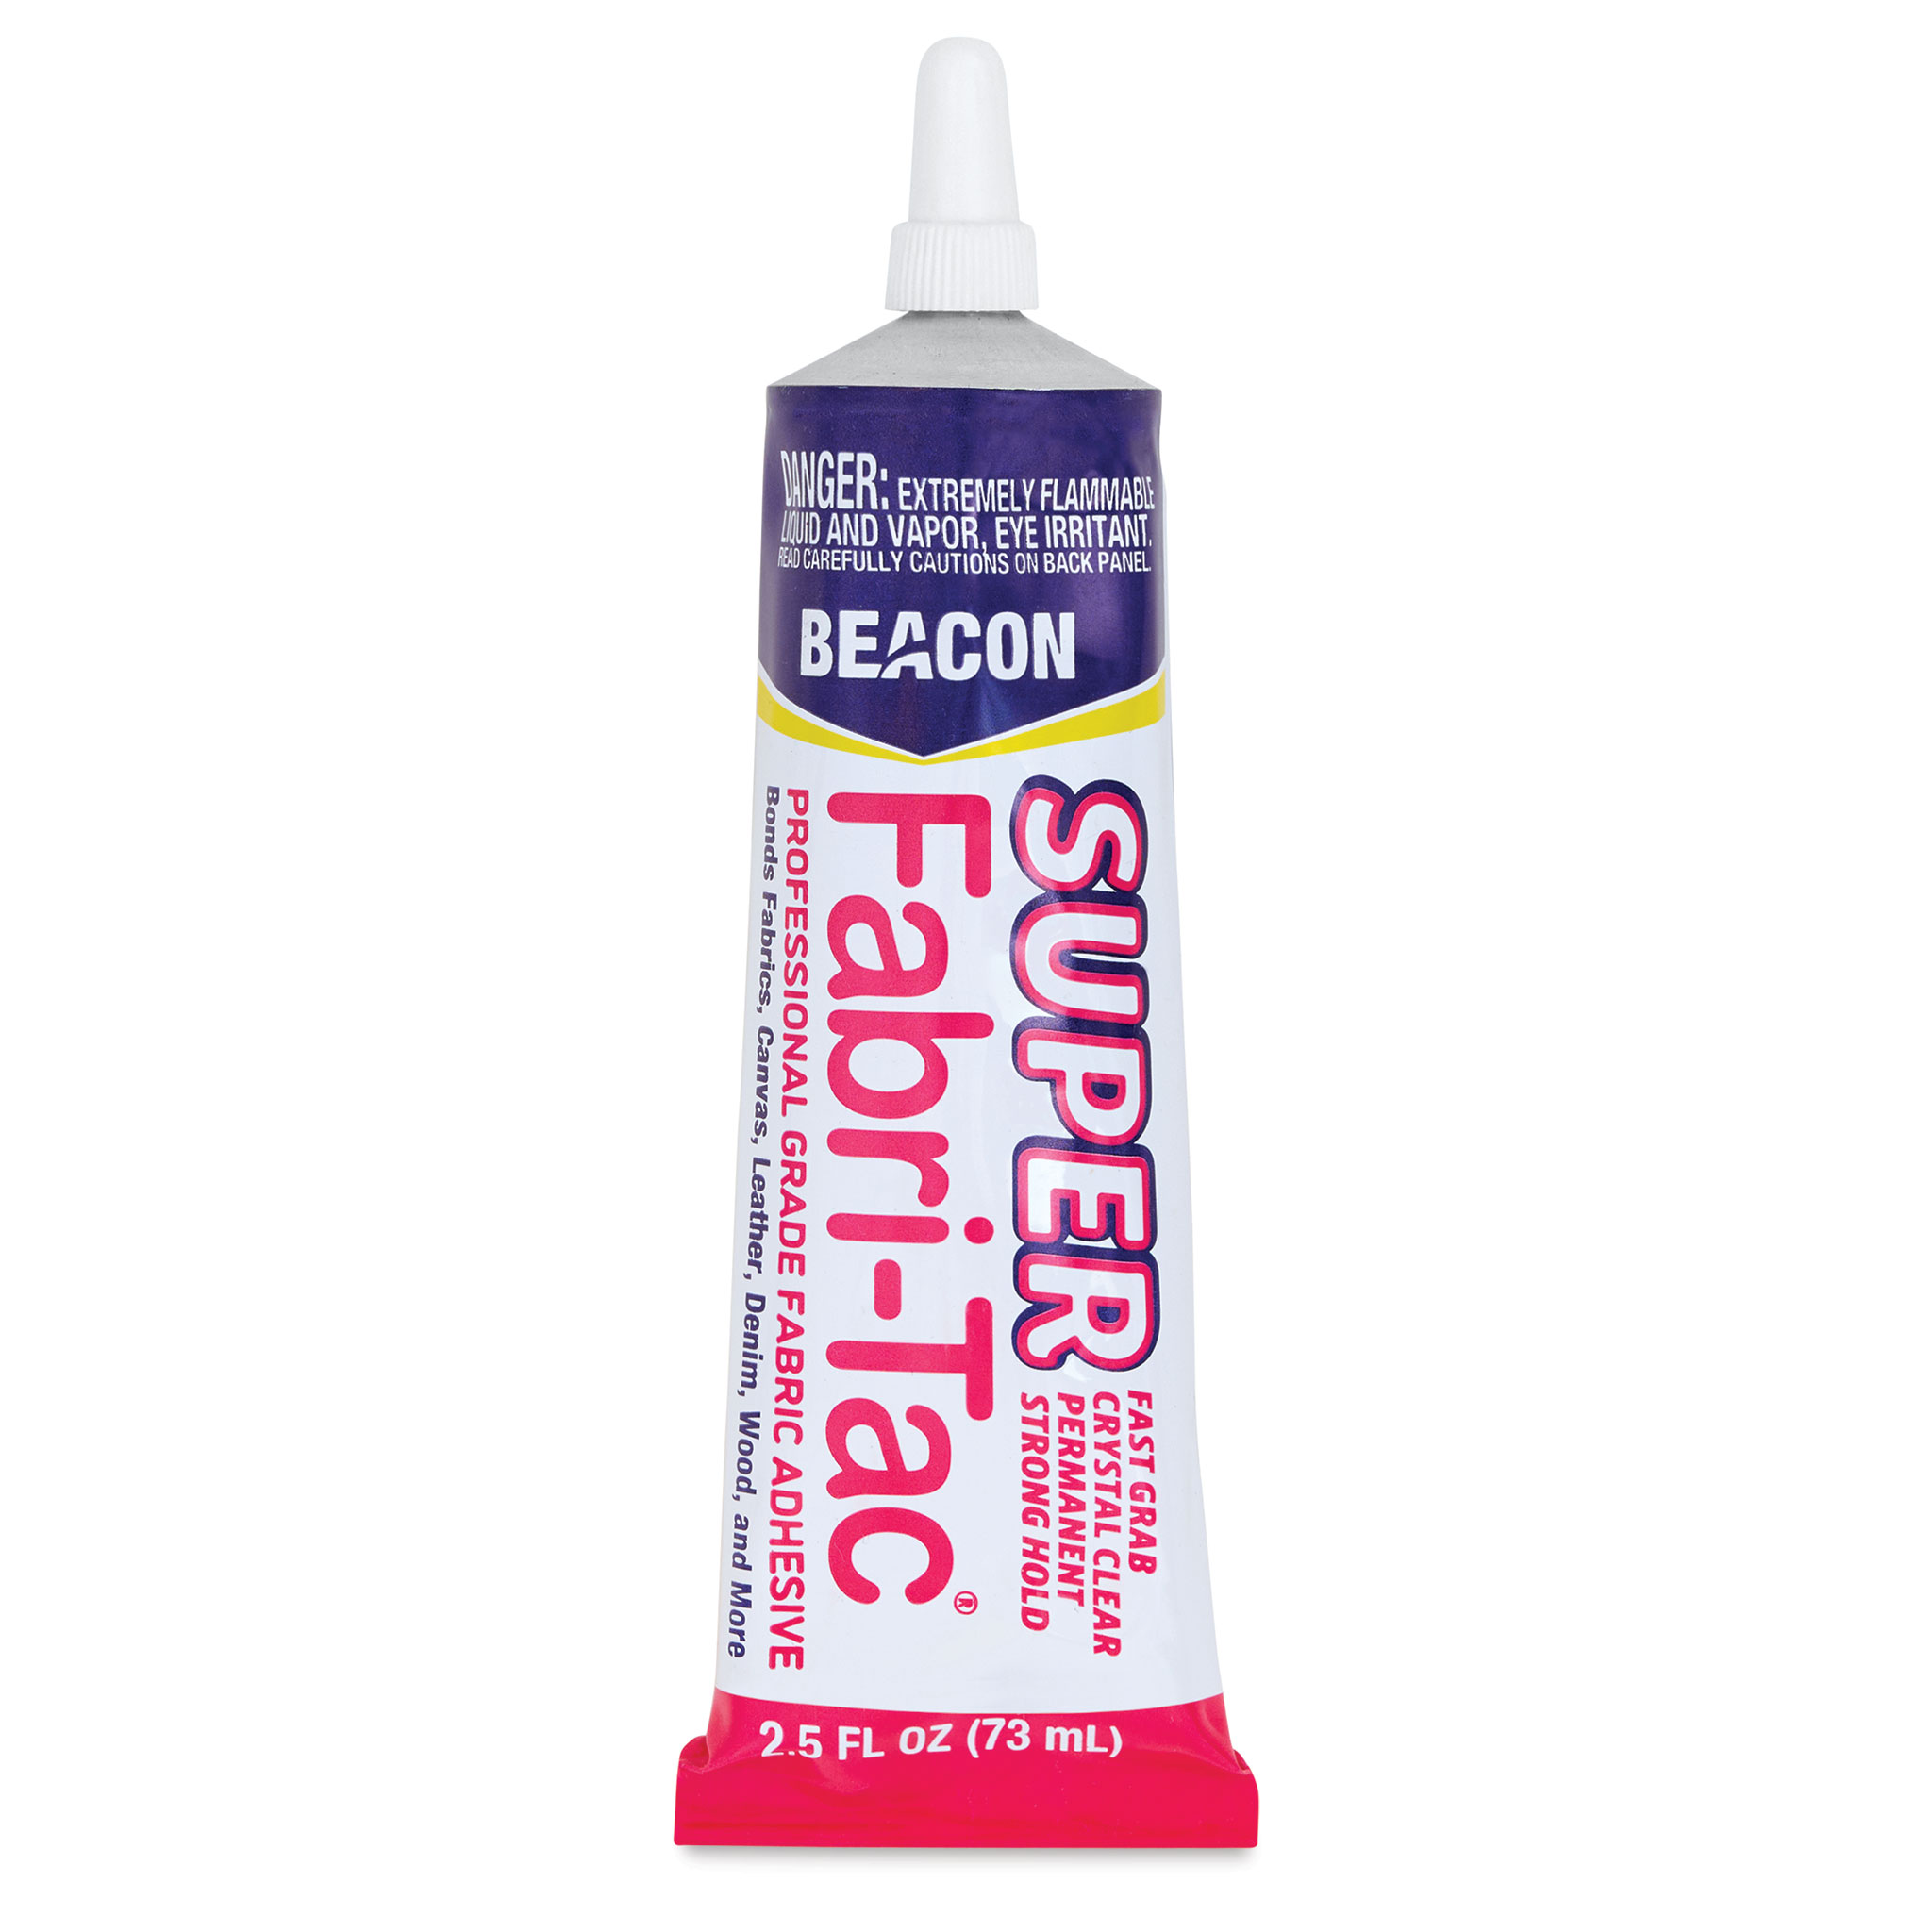 Beacon Multi-Purpose Adhesive Spray